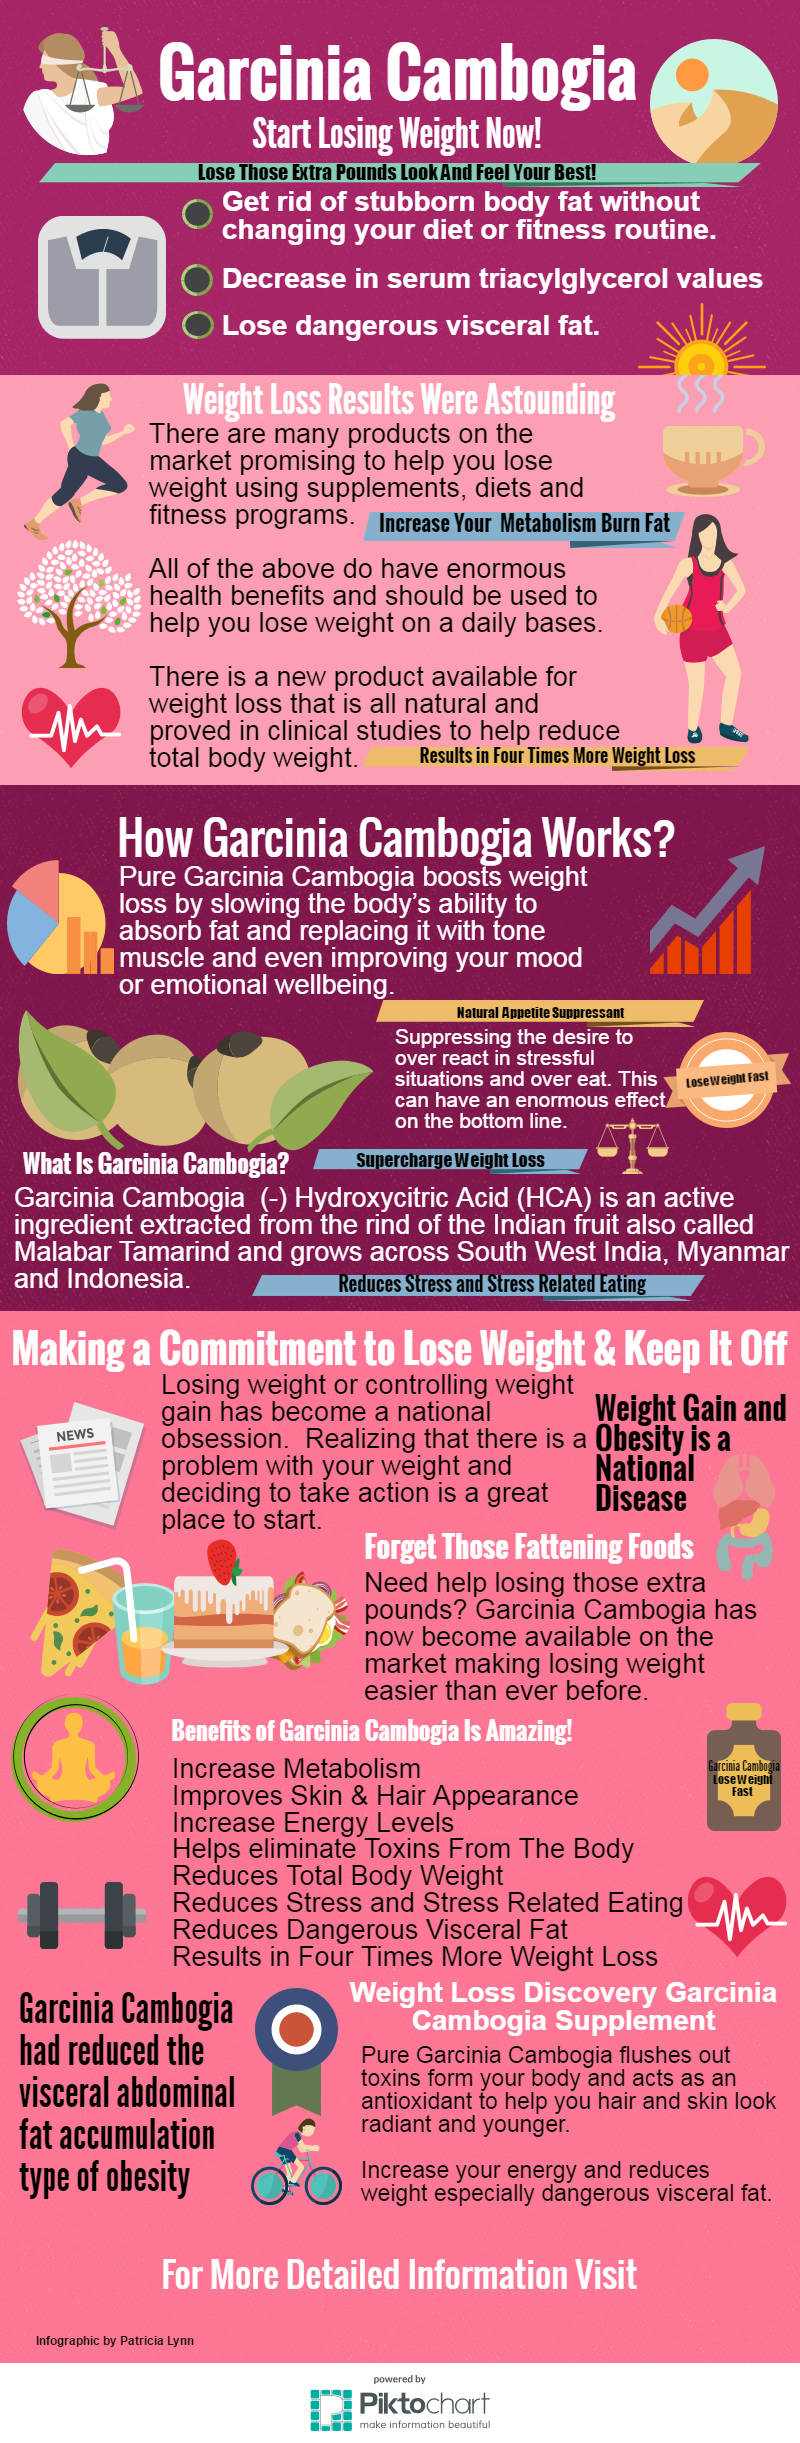 Garcinia-Cambogia-infographic 